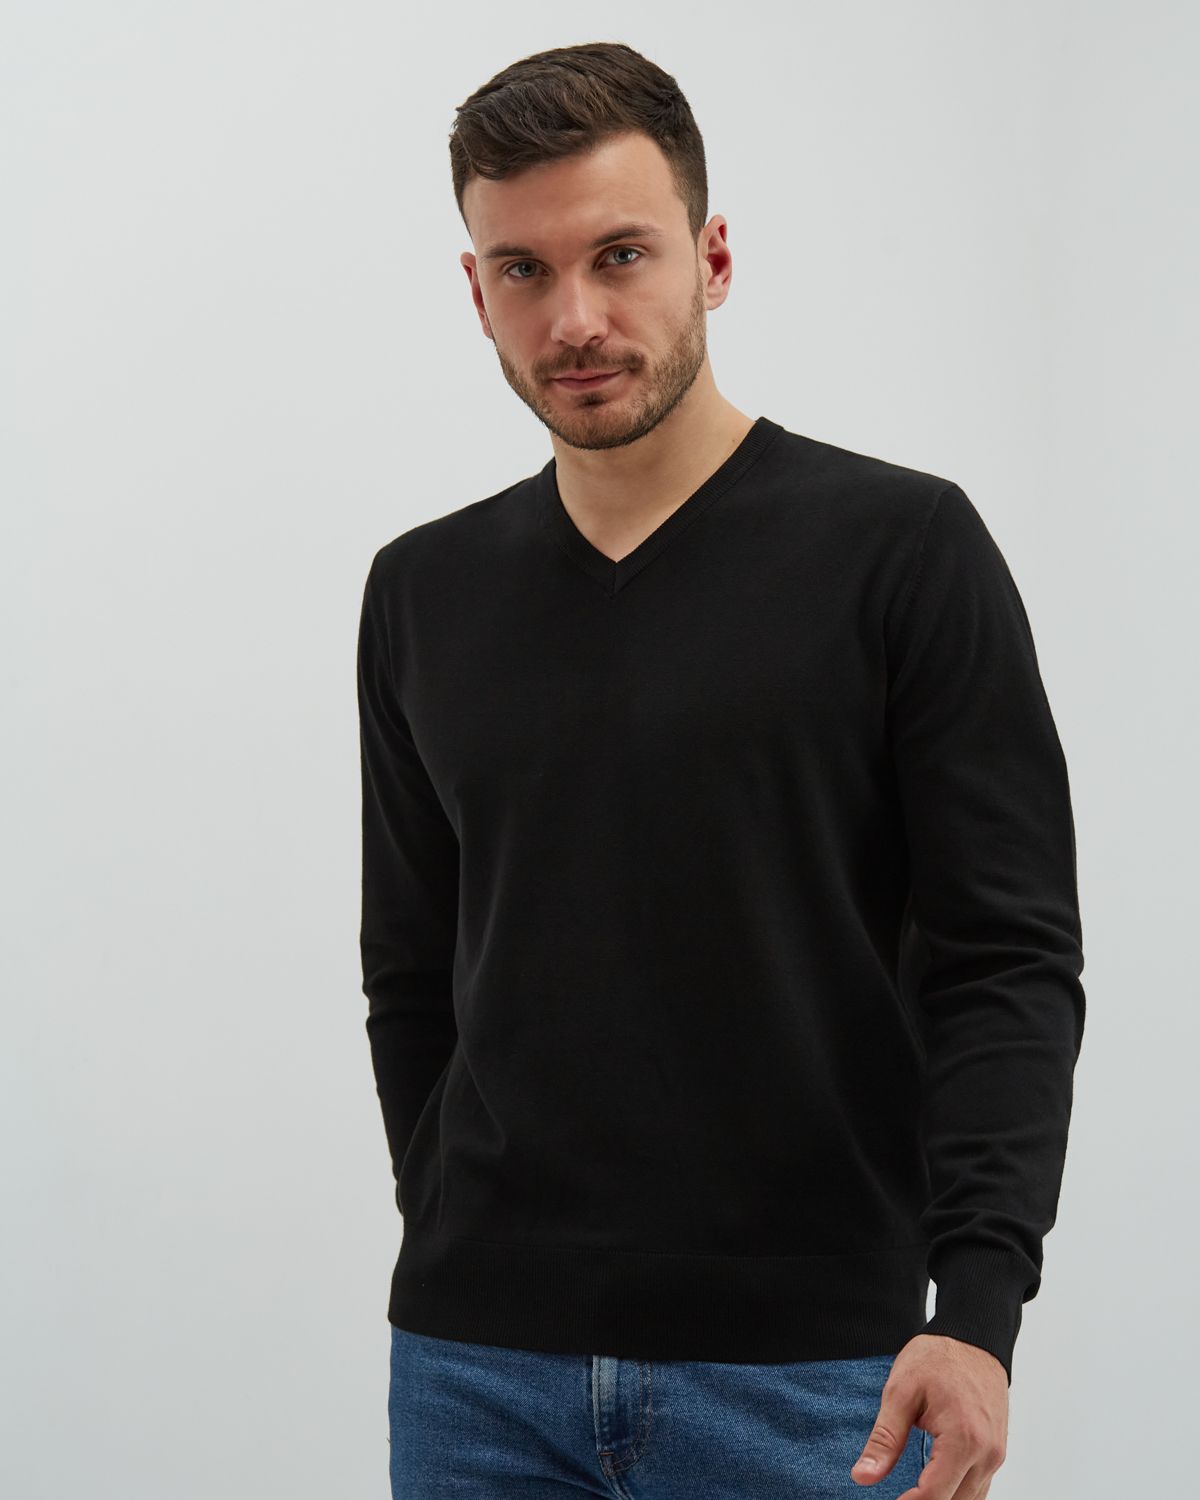 Пуловер мужской MANAFOFF 8106 черный XL